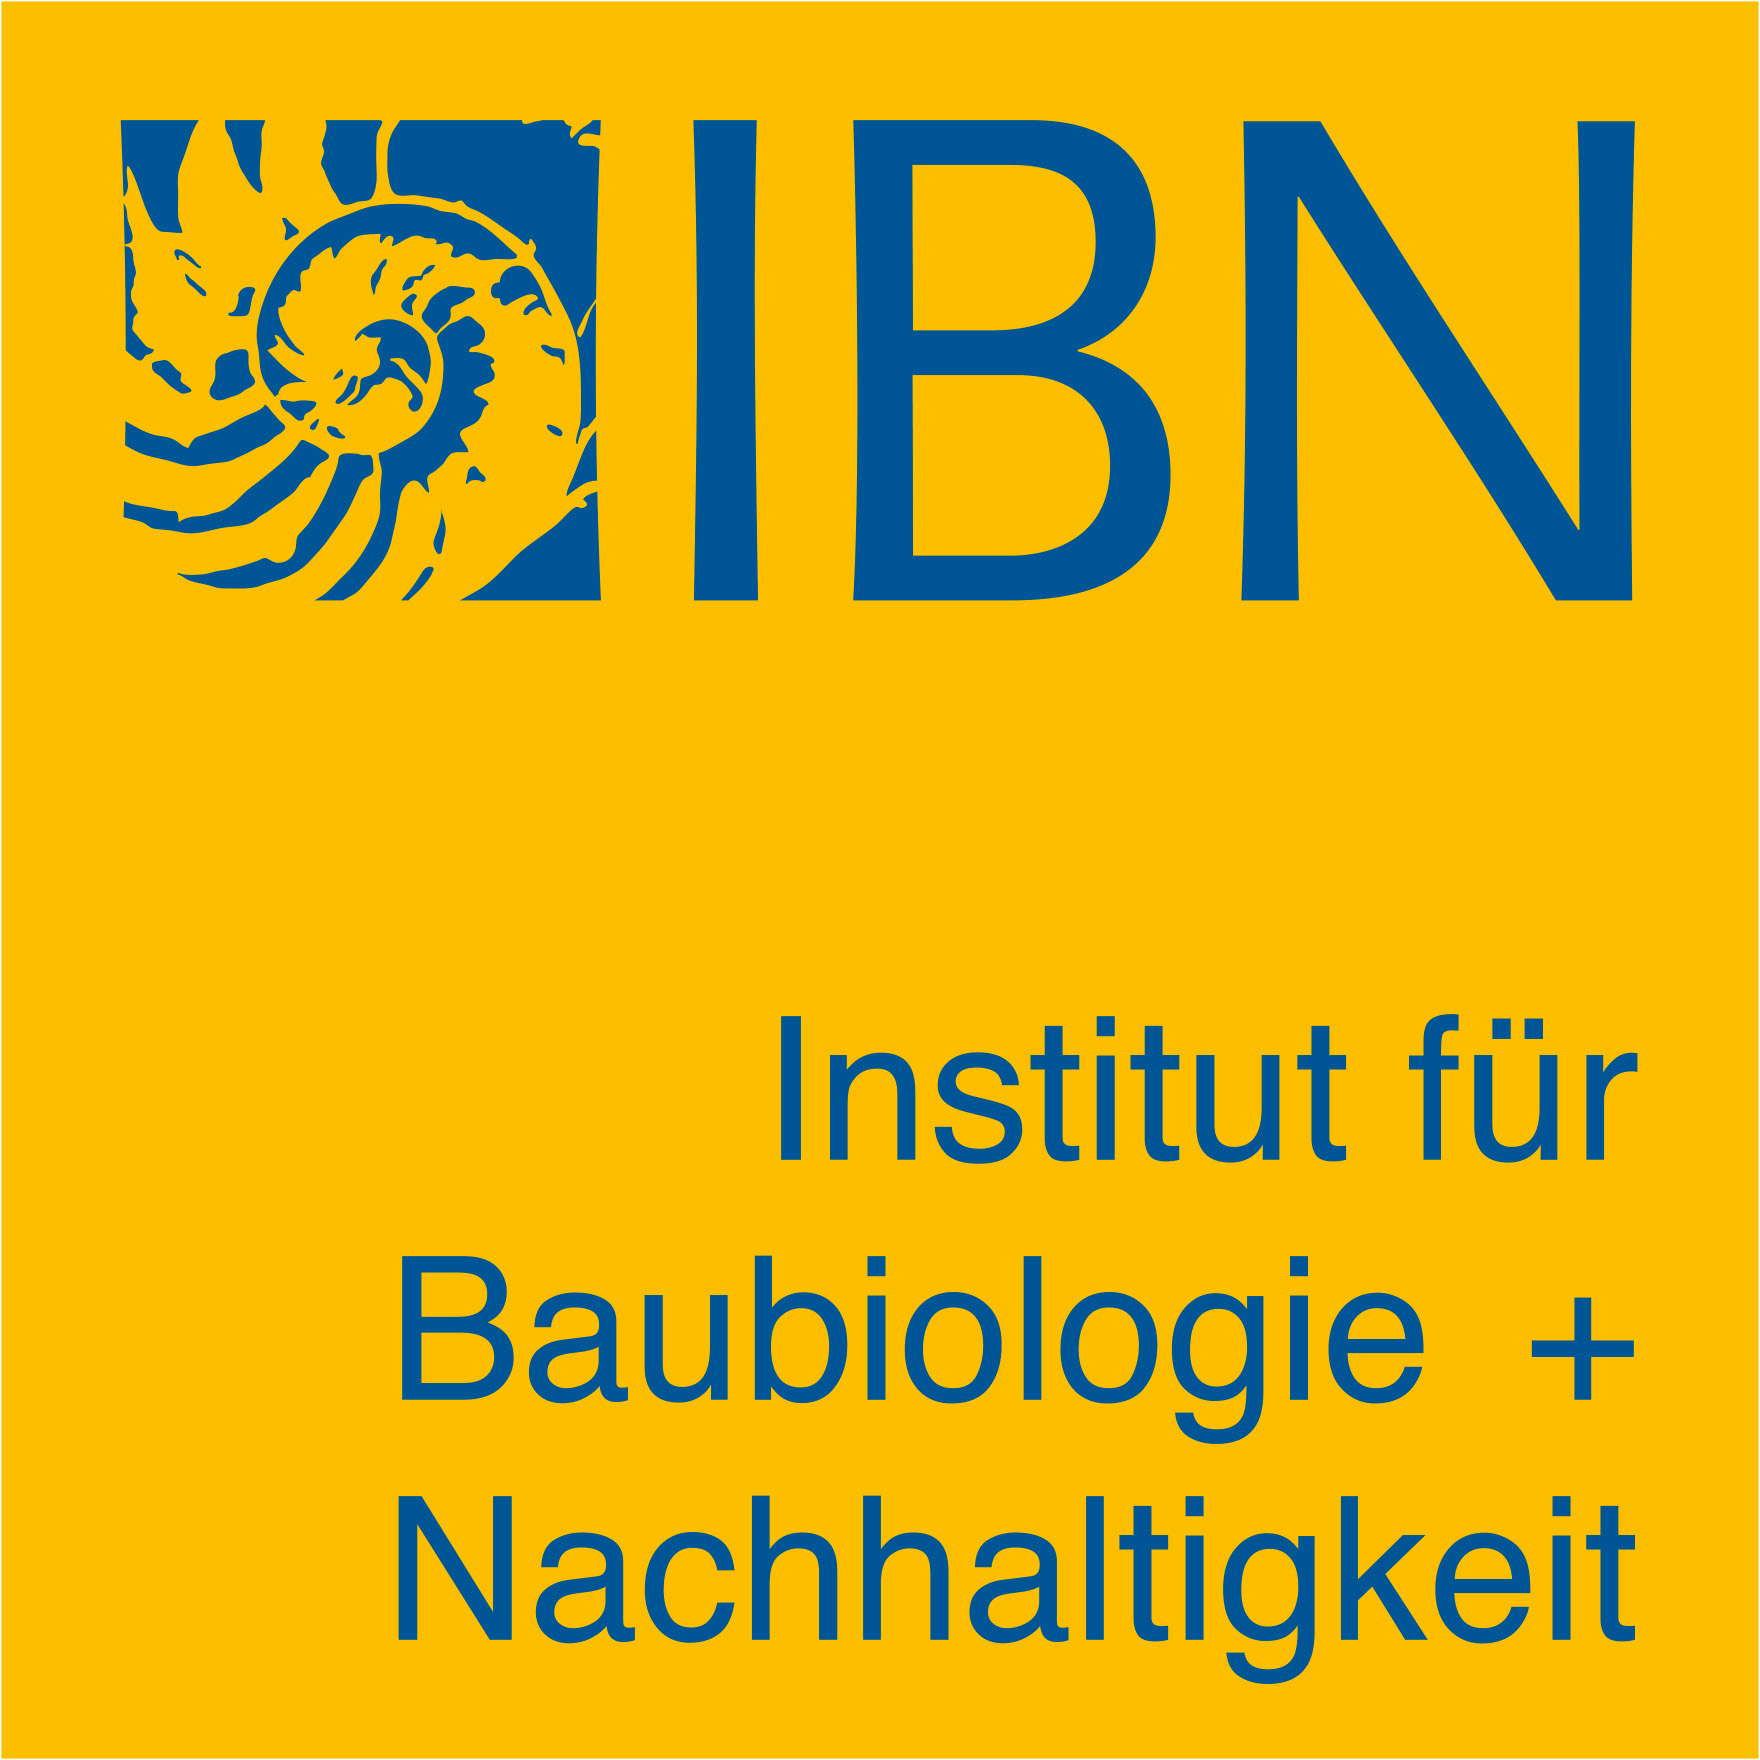 Institut für Baubiologie + Nachhaltigkeit IBN